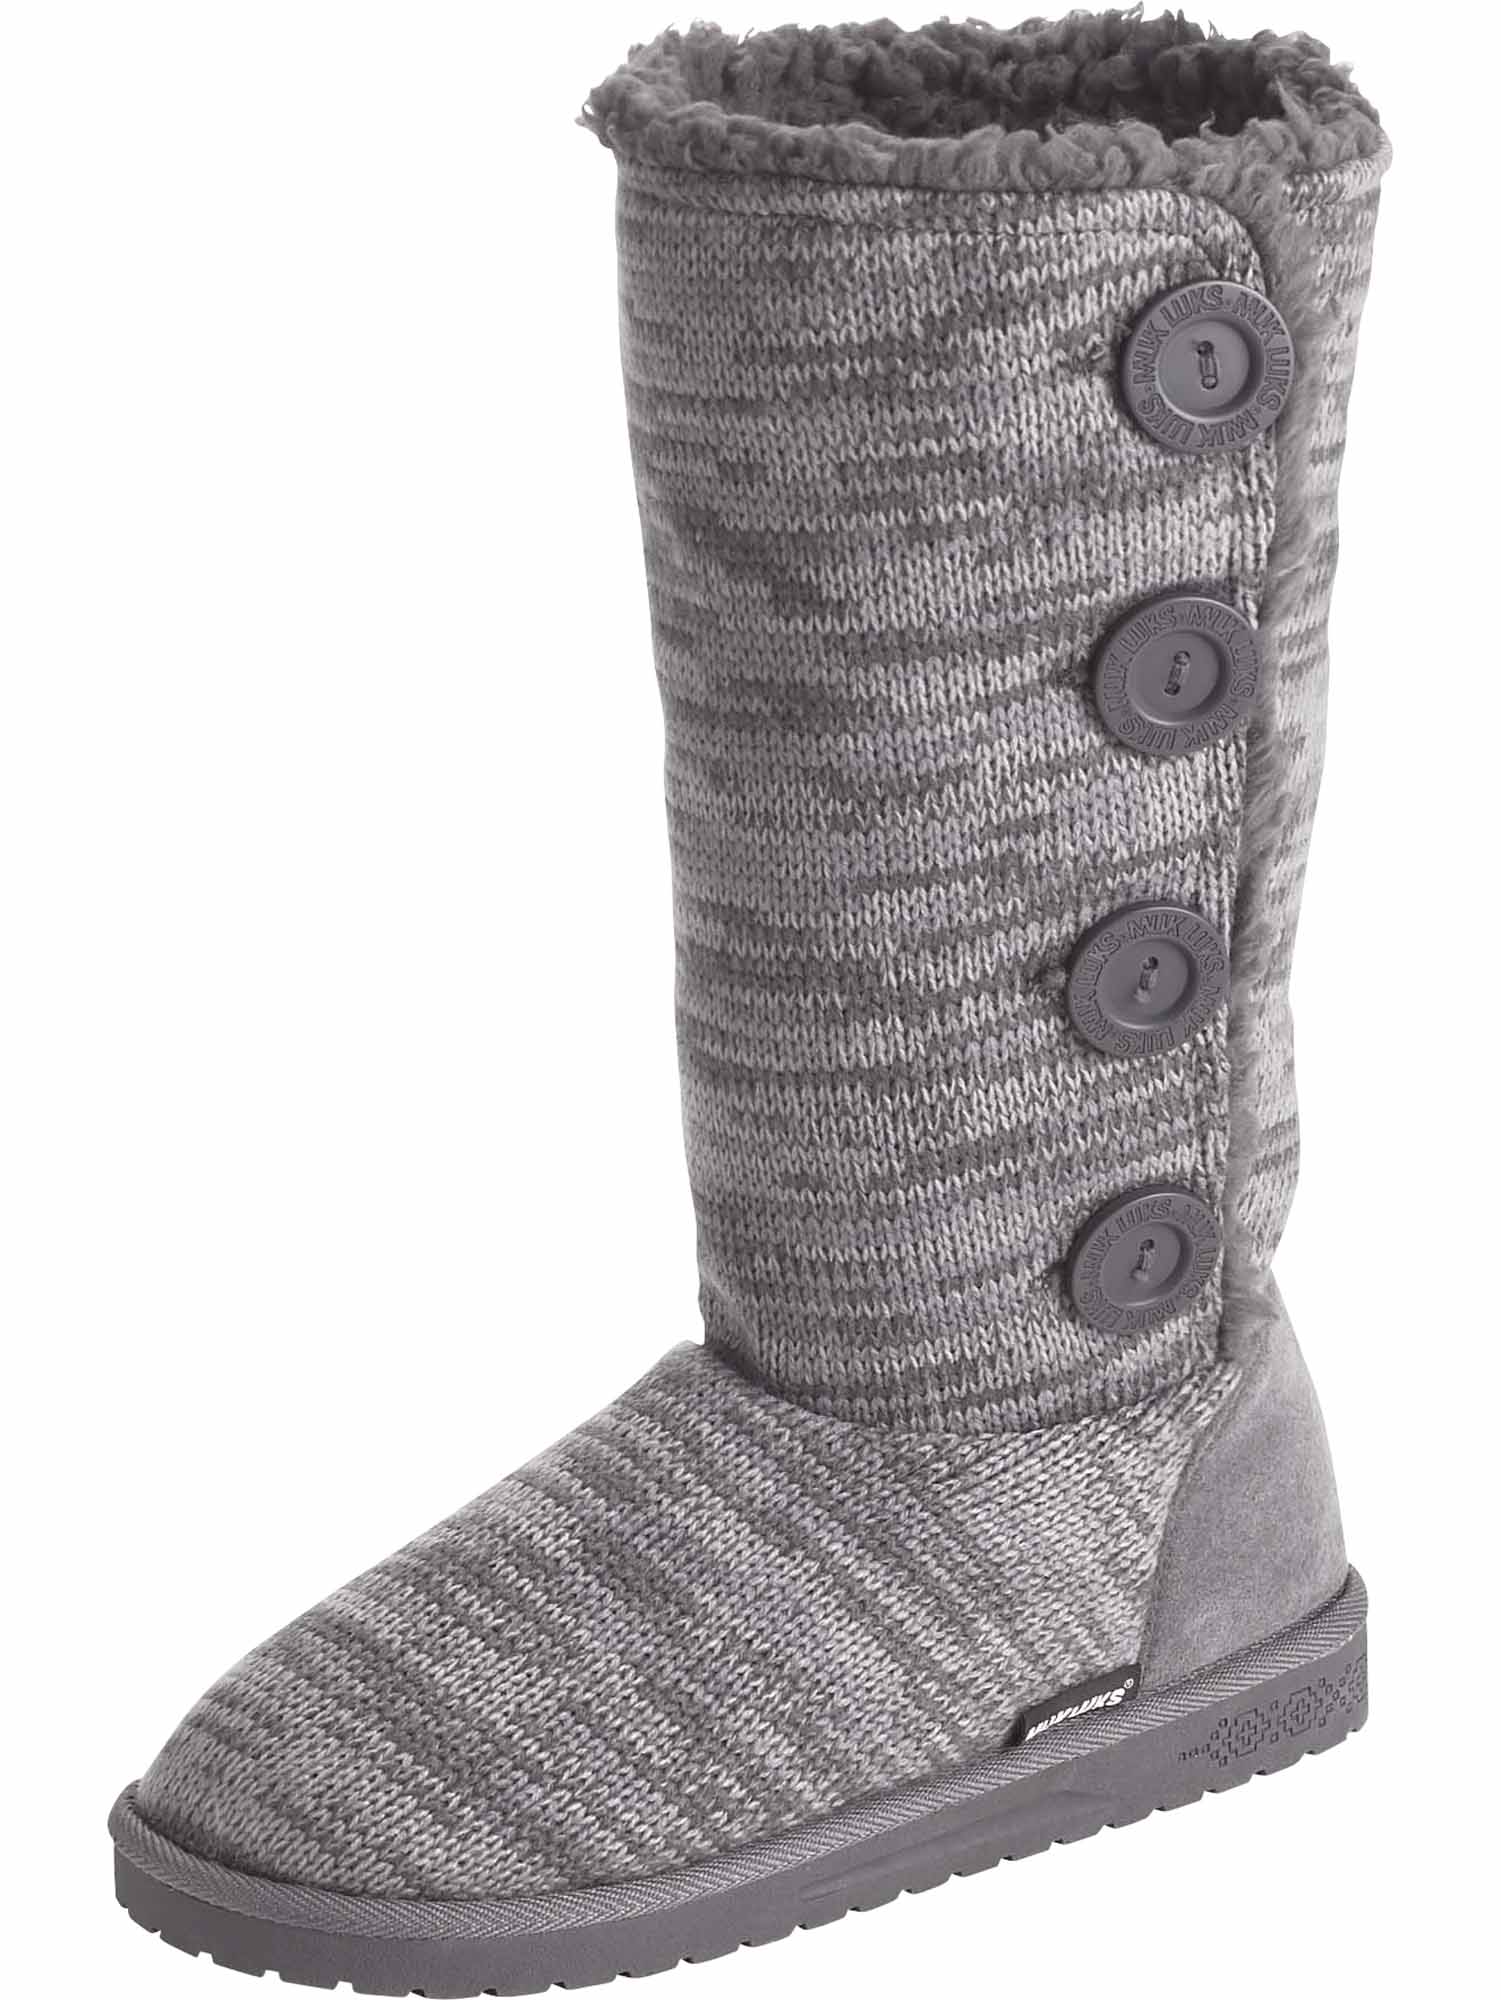 Legendary Whitetails Women's Morning Frost Slipper Boots | eBay